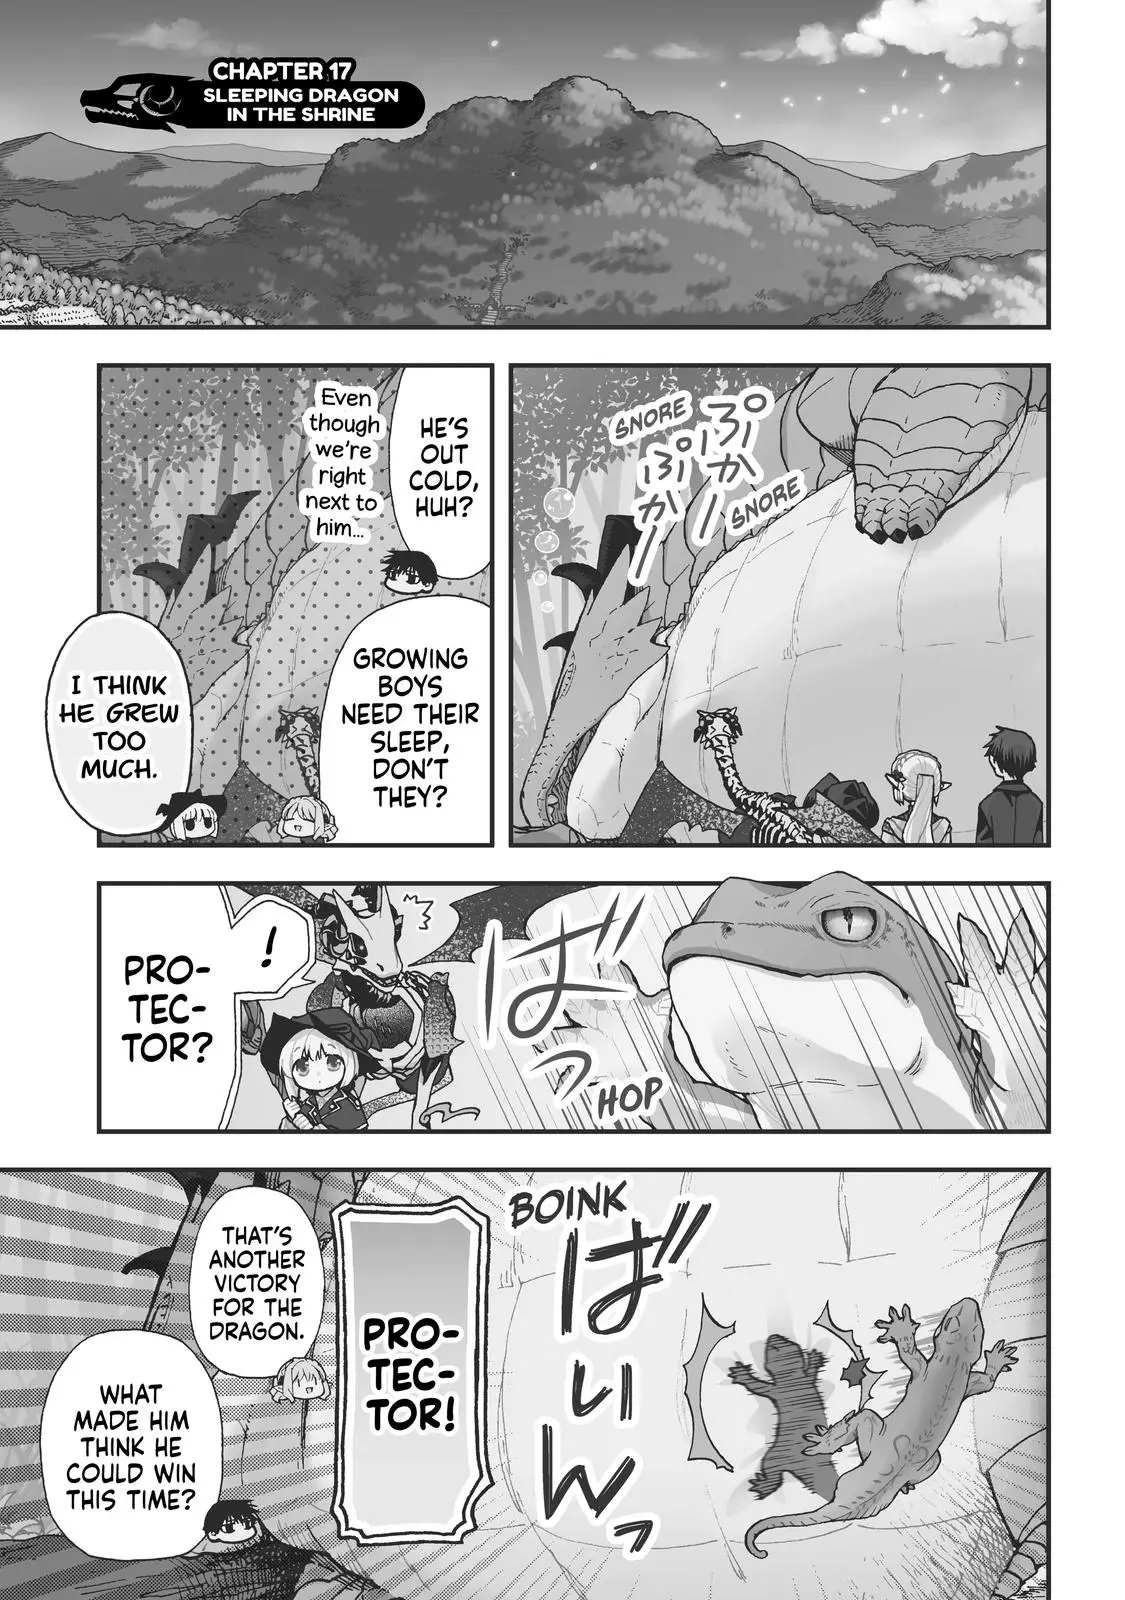 Hone Dragon No Mana Musume - 17 page 1-9473291a